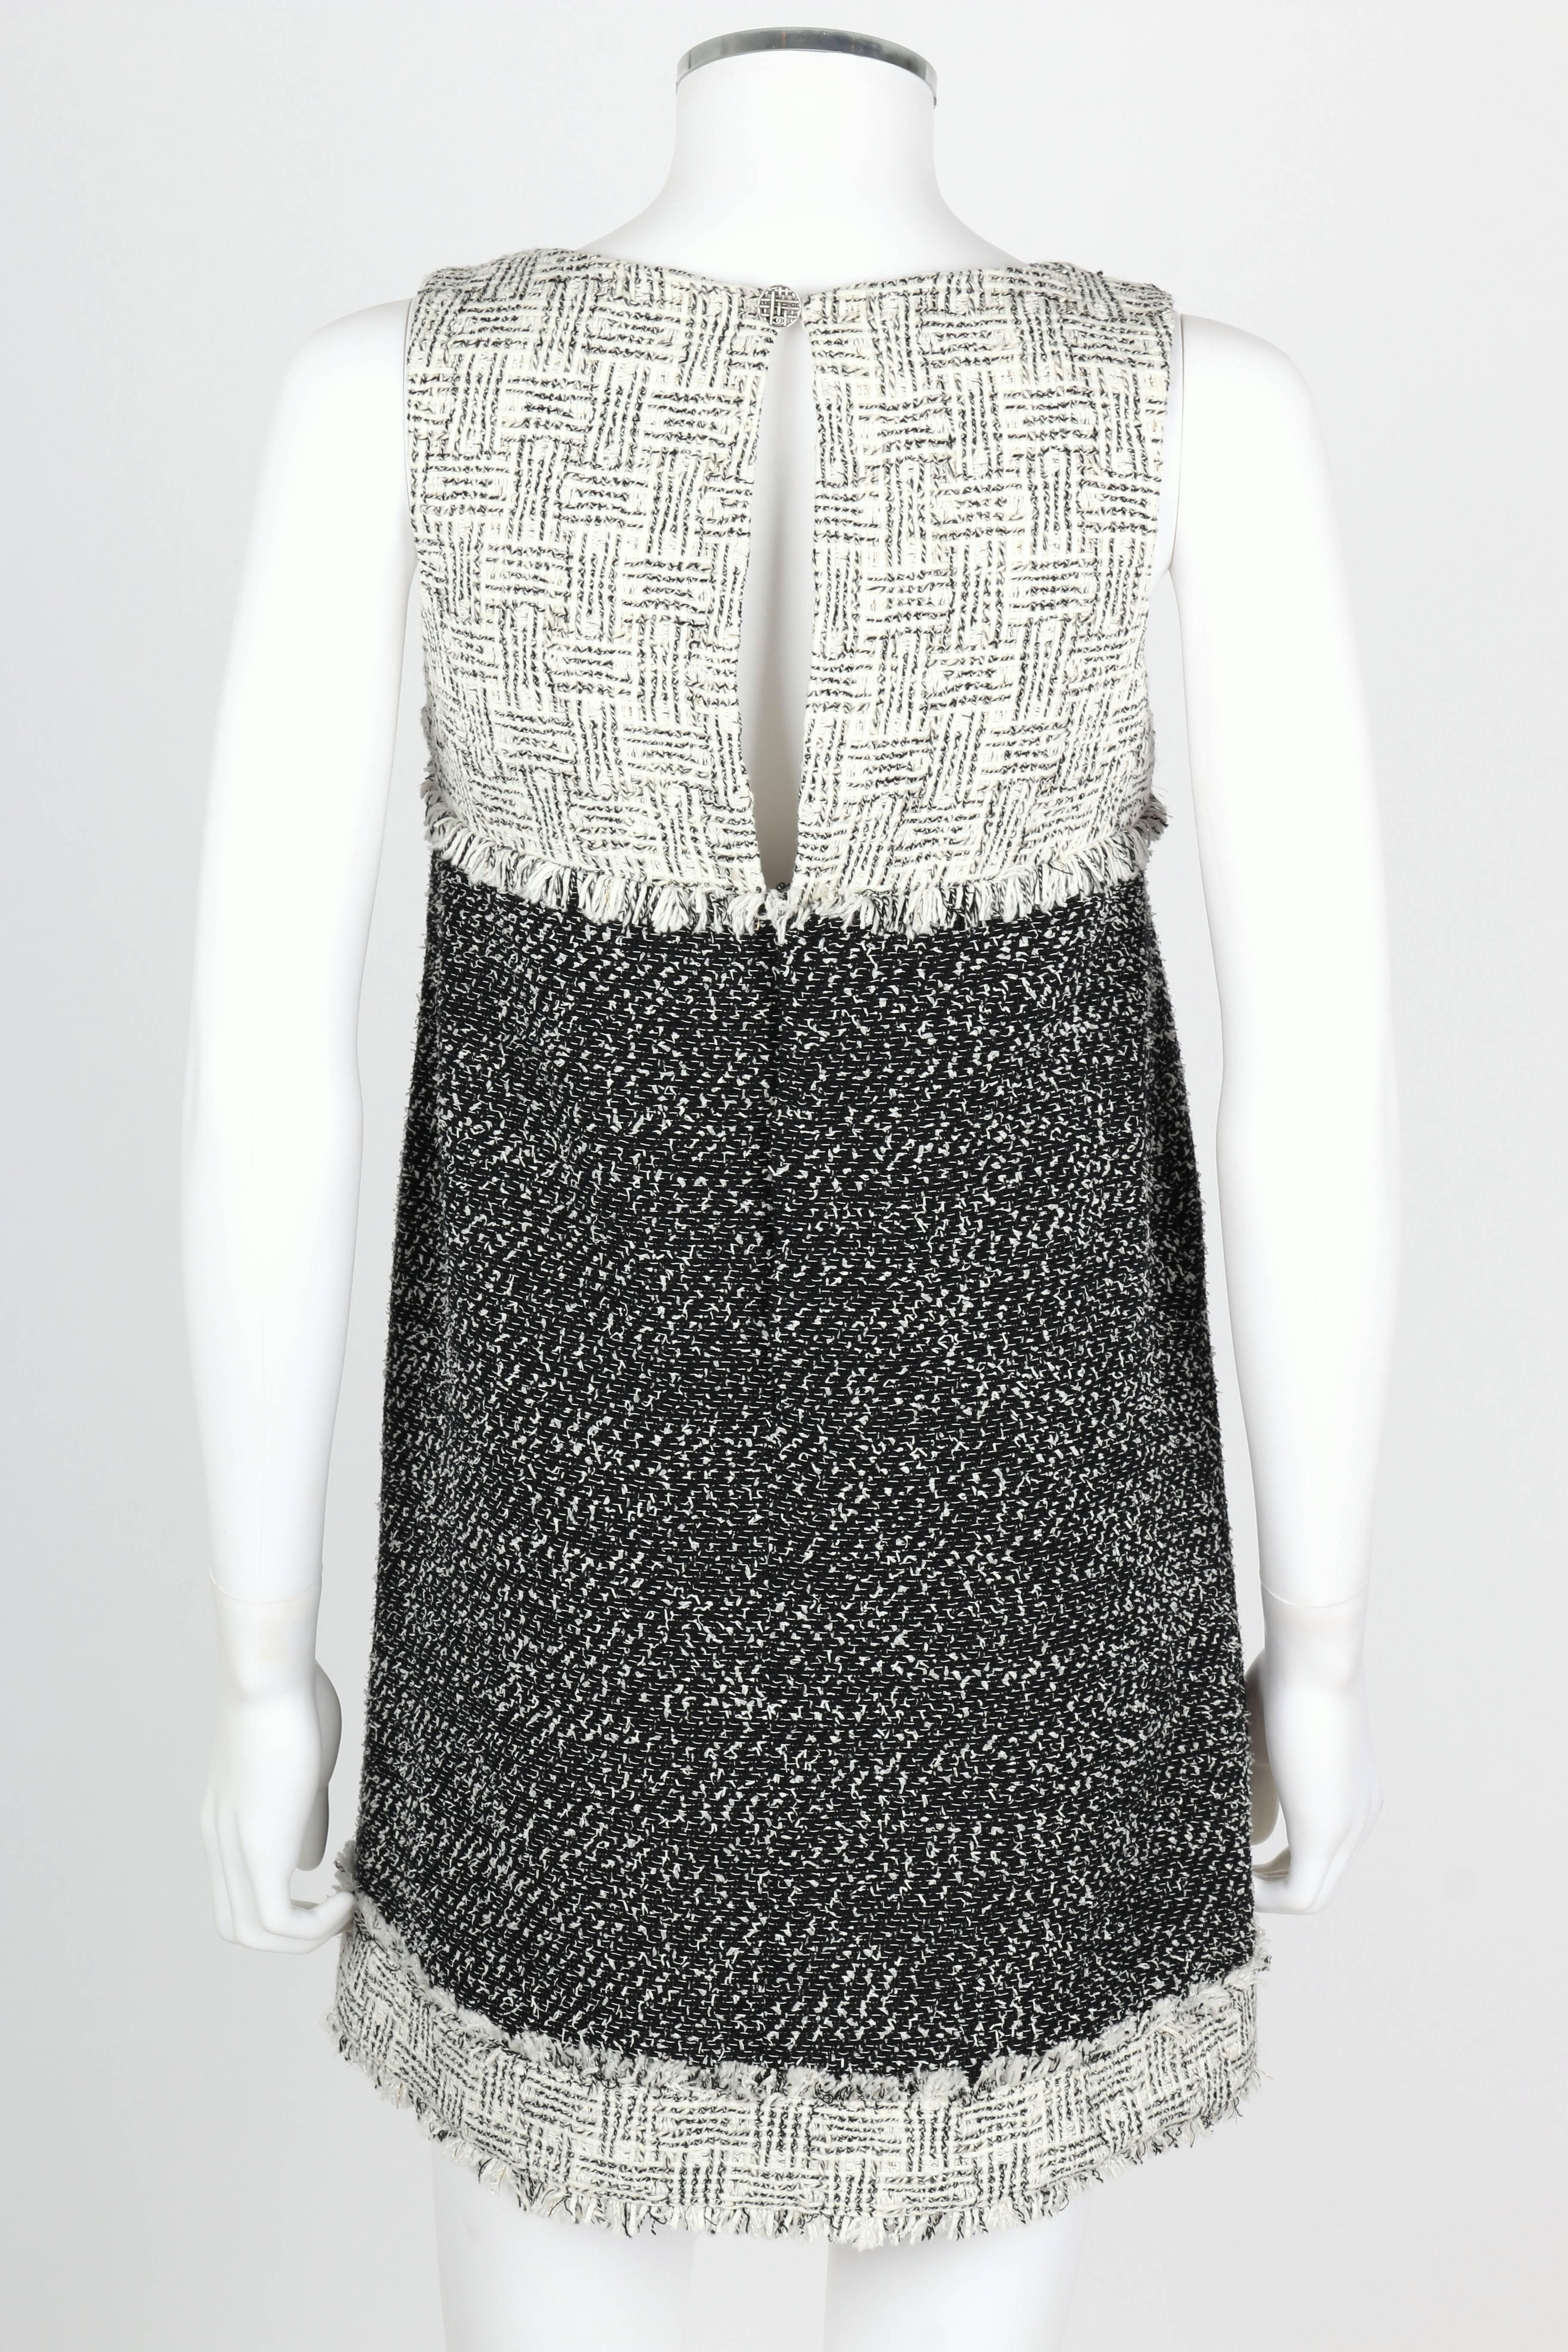 Women's CHANEL 2014 Black White Boucle Tweed Fringe Sleeveless Shift Mini Dress Size 36